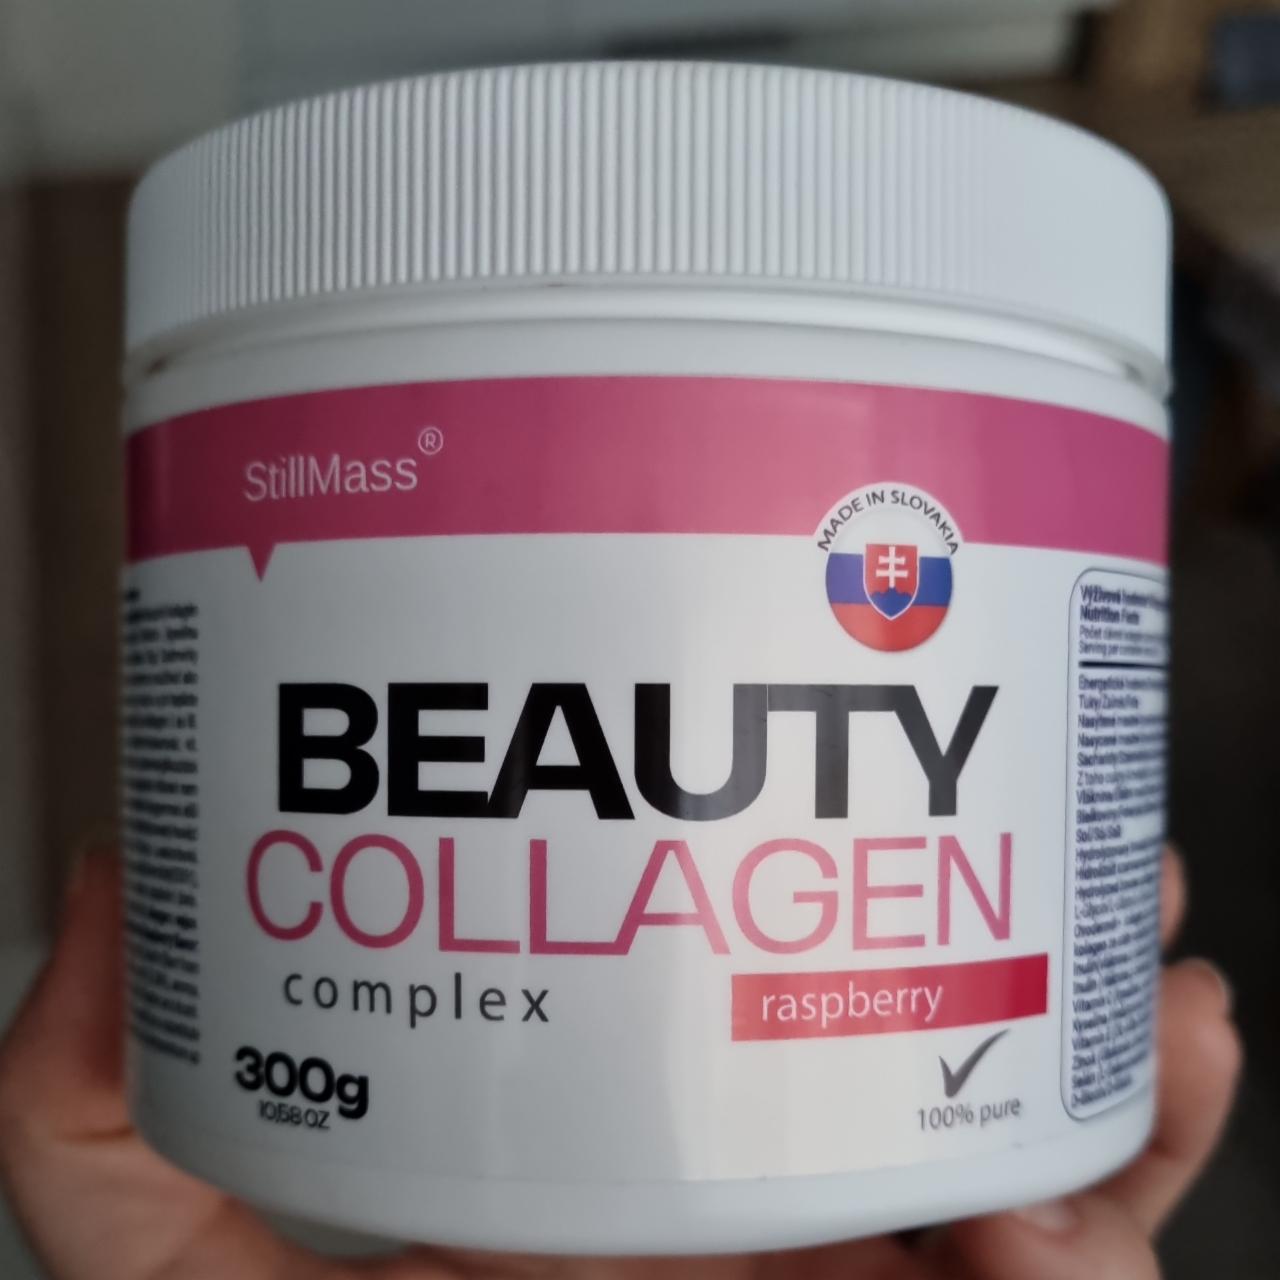 Fotografie - Beauty Collagen complex raspberry StillMass